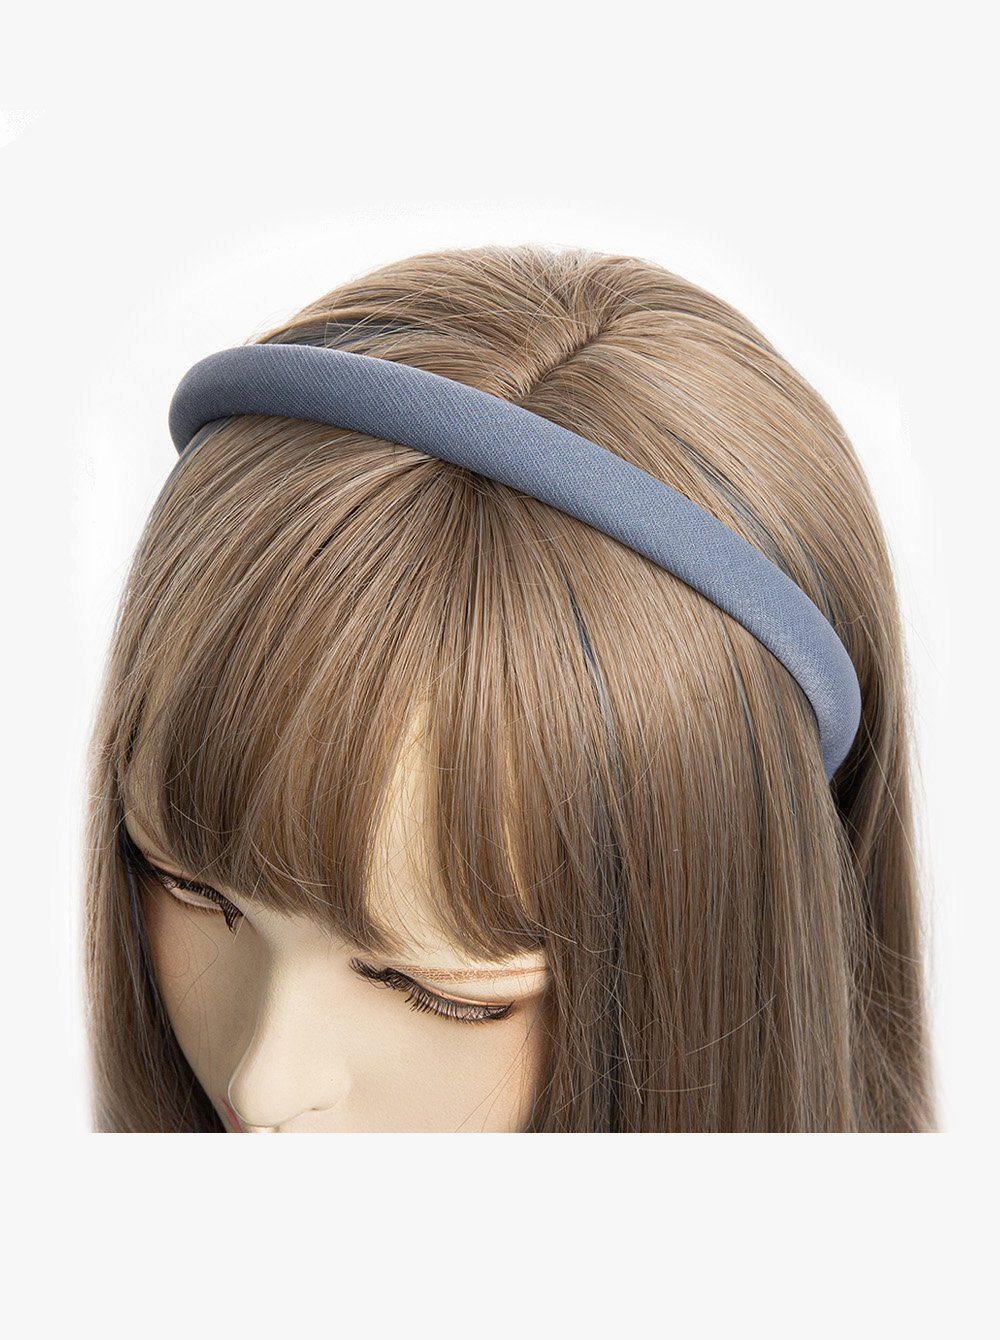 axy Haarreif Haarreif aus Stoff mit feinen Metallicfäden, gepolstertes Wunderschön Stirnband Haarschmuck Jeansblau